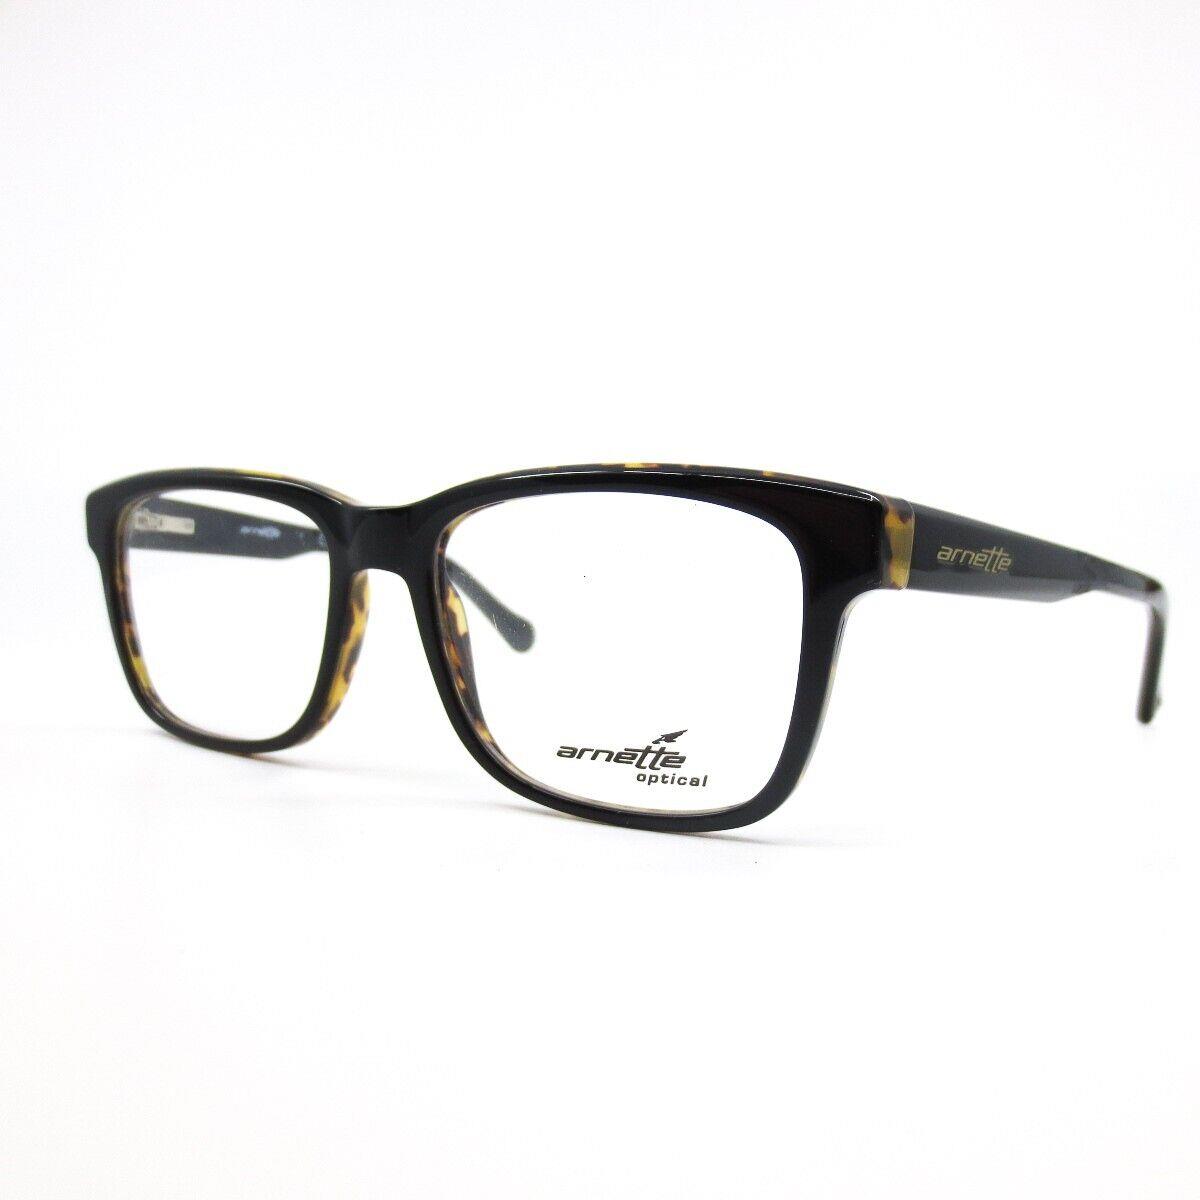 Arnette Eyeglasses Frames Output 7101 1182 Black Tortoise Square 51-17-135